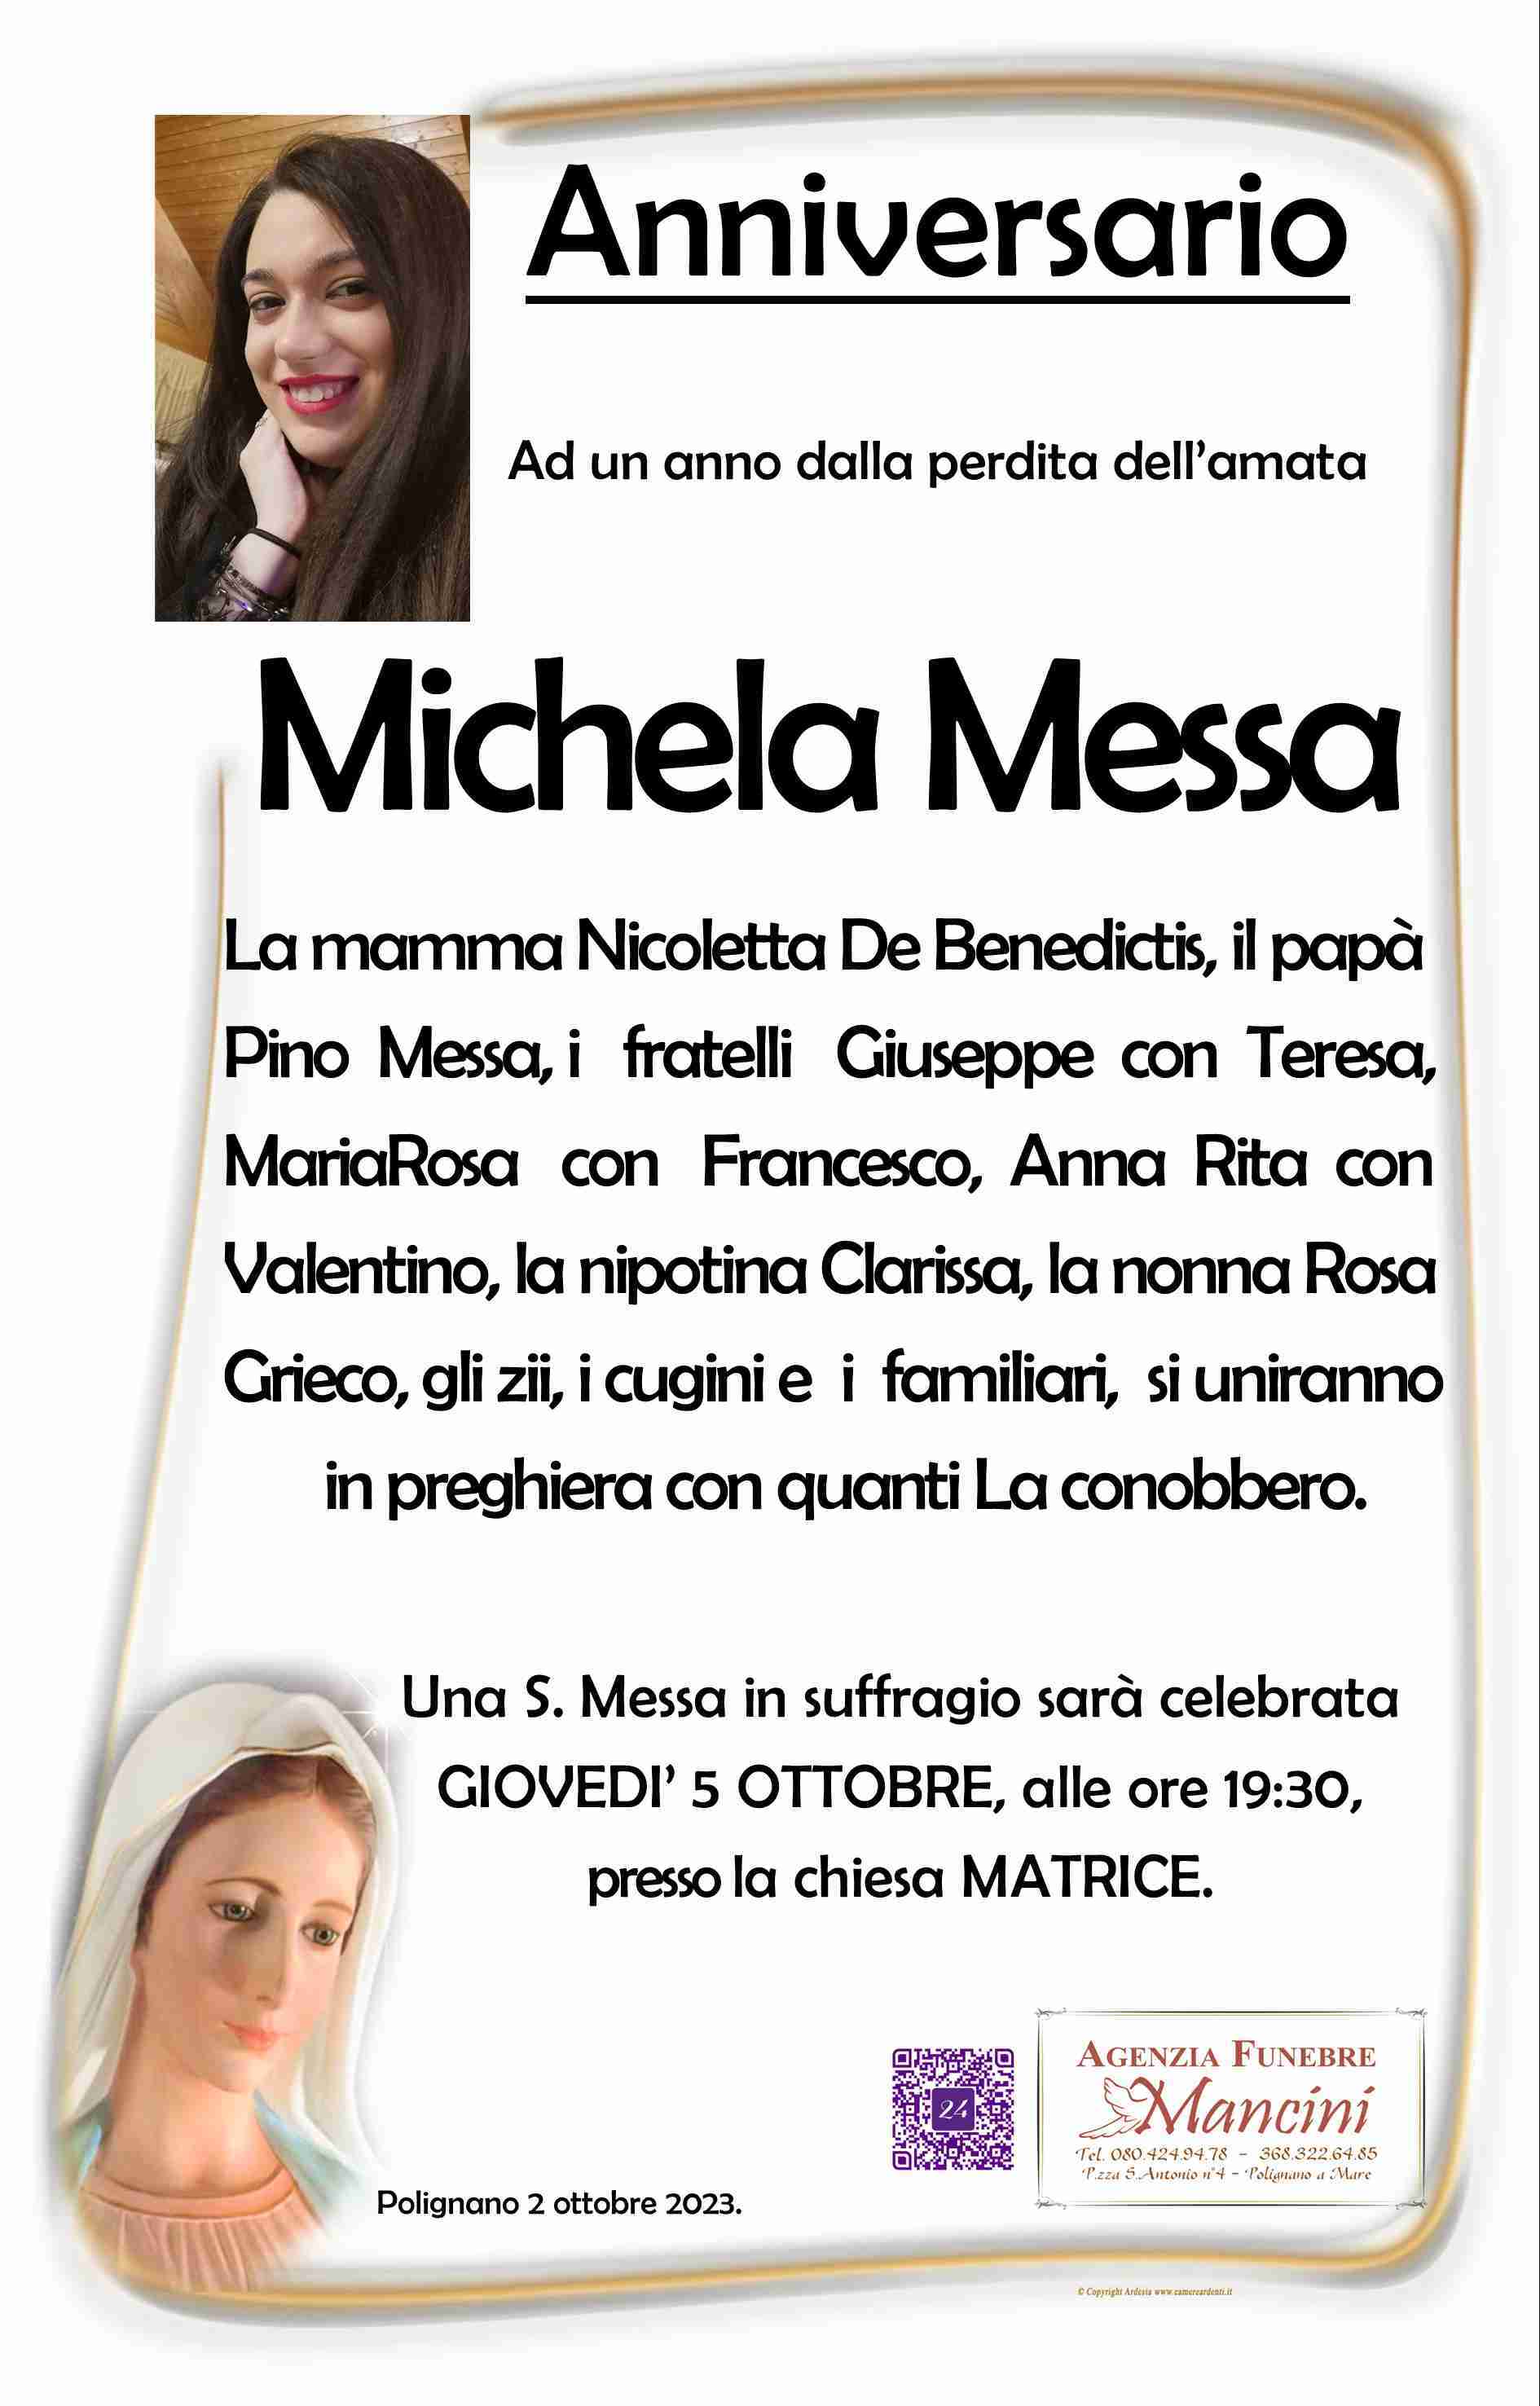 Michela Messa